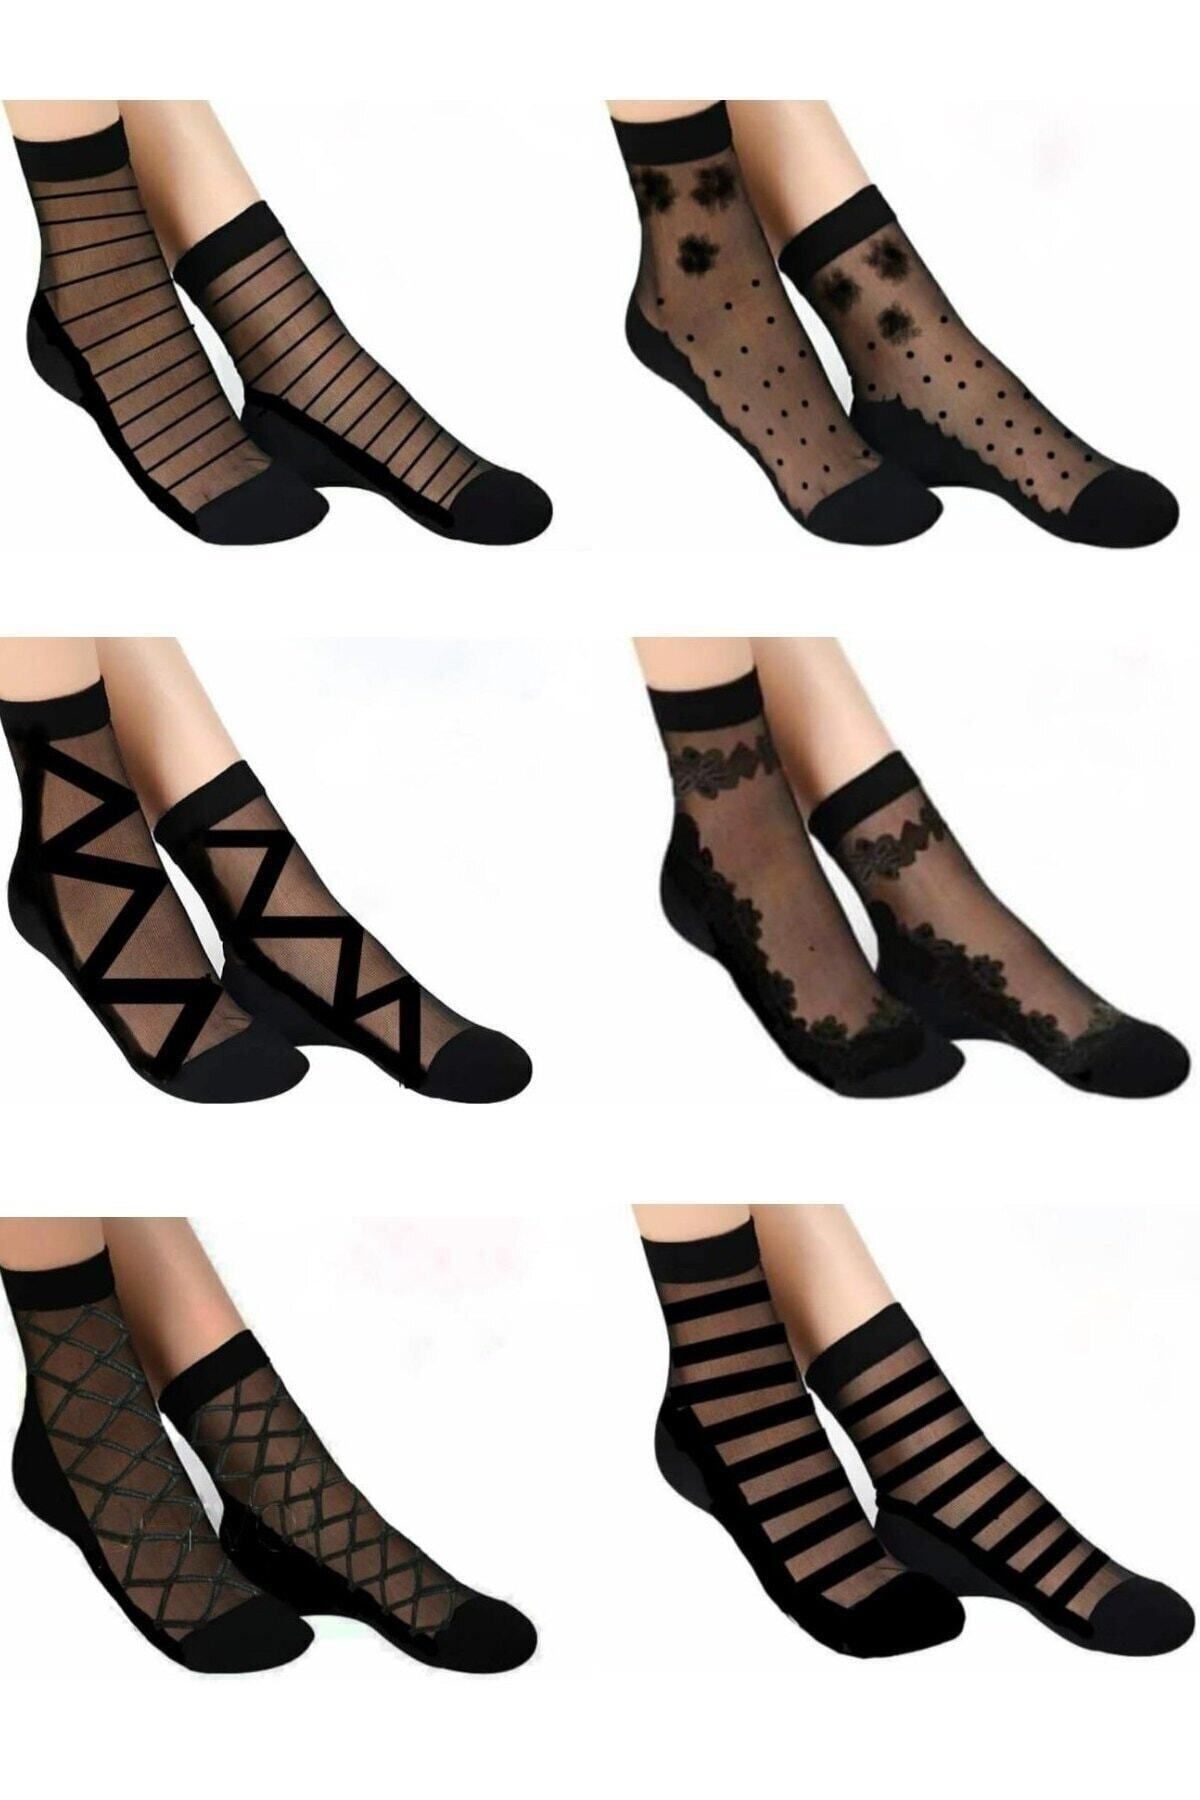 Uzun ve Kısa Siyah Çorap Modelleri ve Fiyatları - Trendyol - Sayfa 22